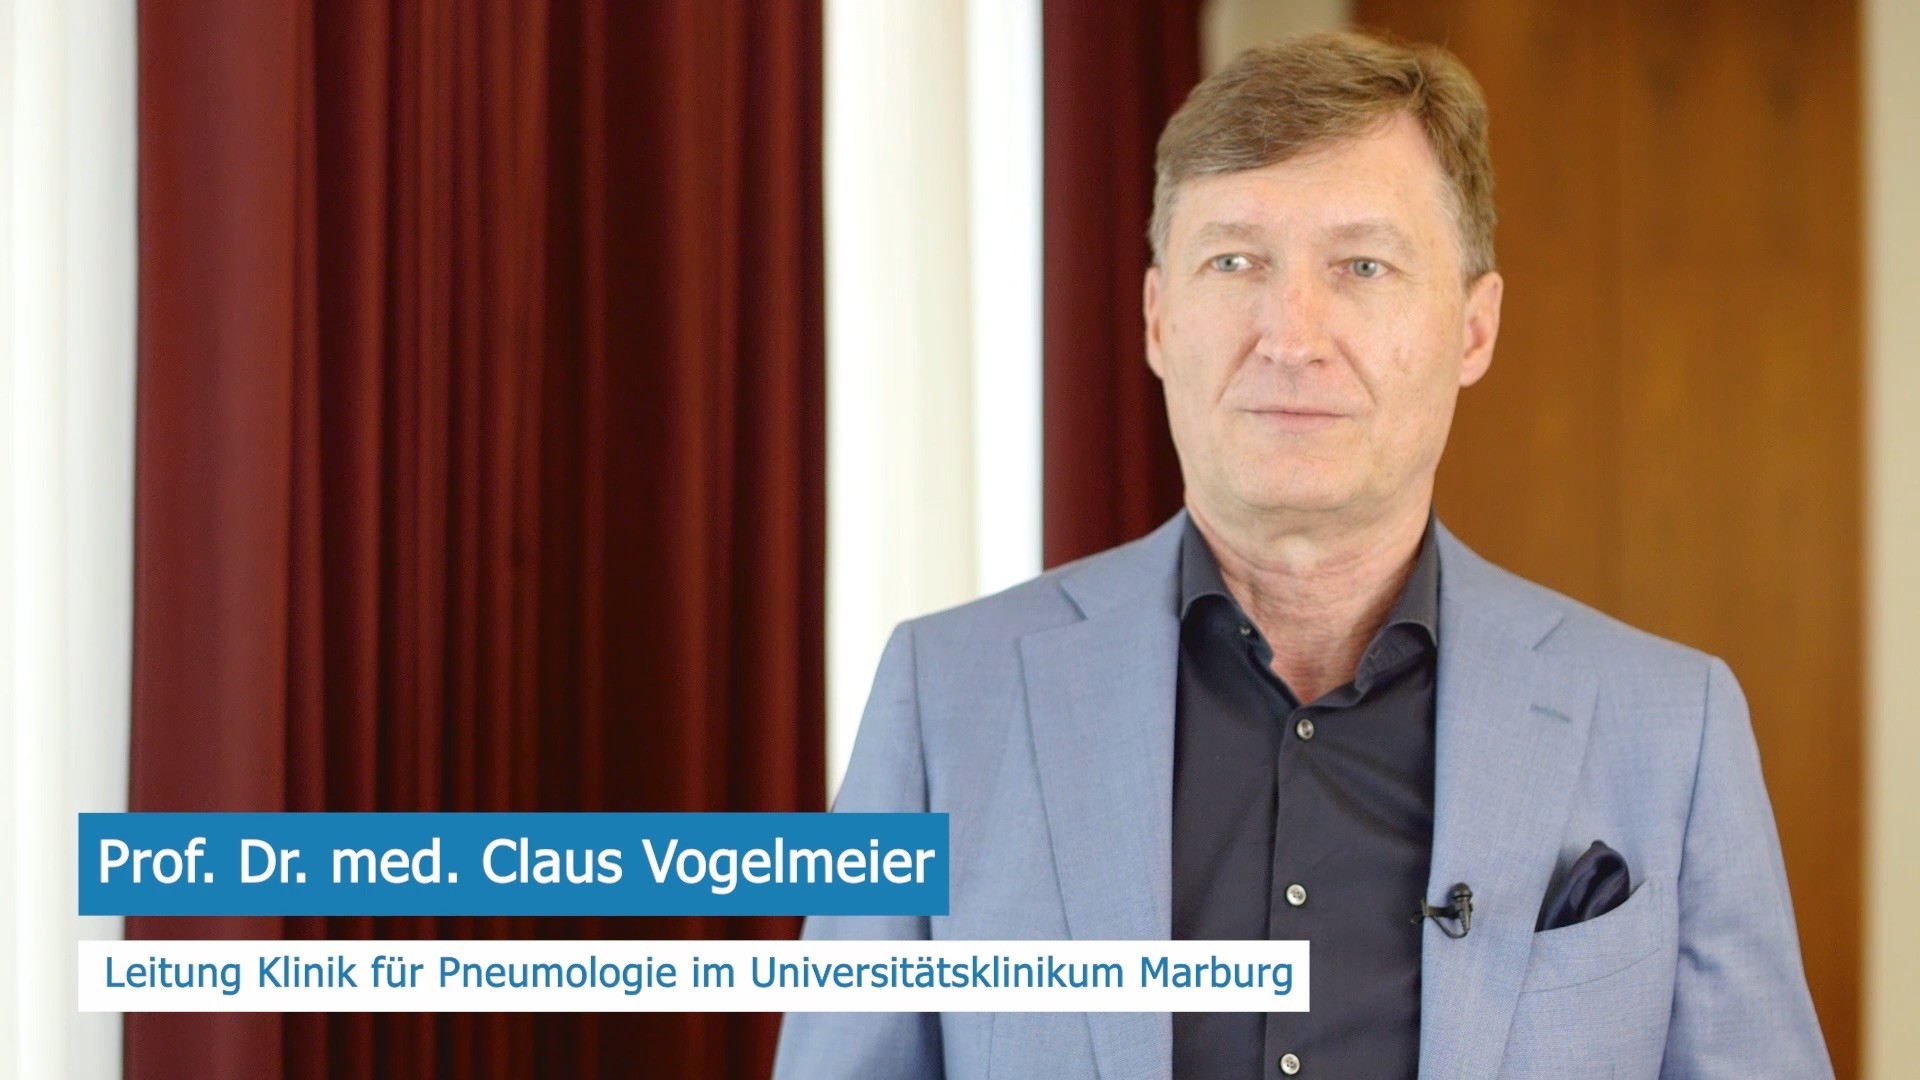 COPD Therapie in der Klinik. Prof. Dr. med. Claus Vogelmeier geht im Interview auf die Besonderheiten der CODP Therapie in der Klinik ein.